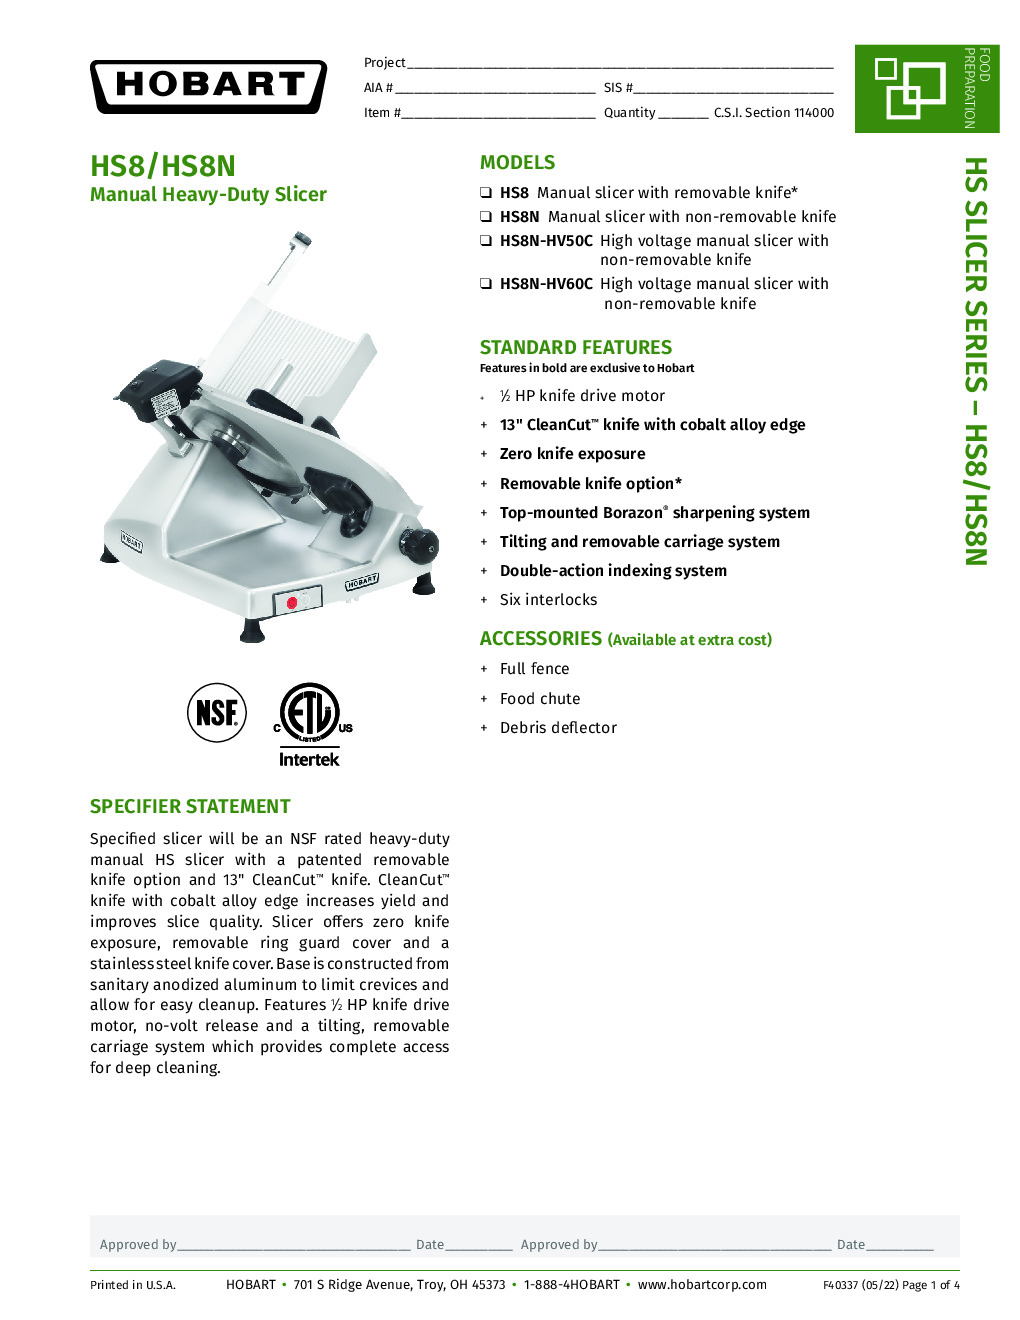 Hobart HS8N-HV50C High Voltage Manual Slicer with 13